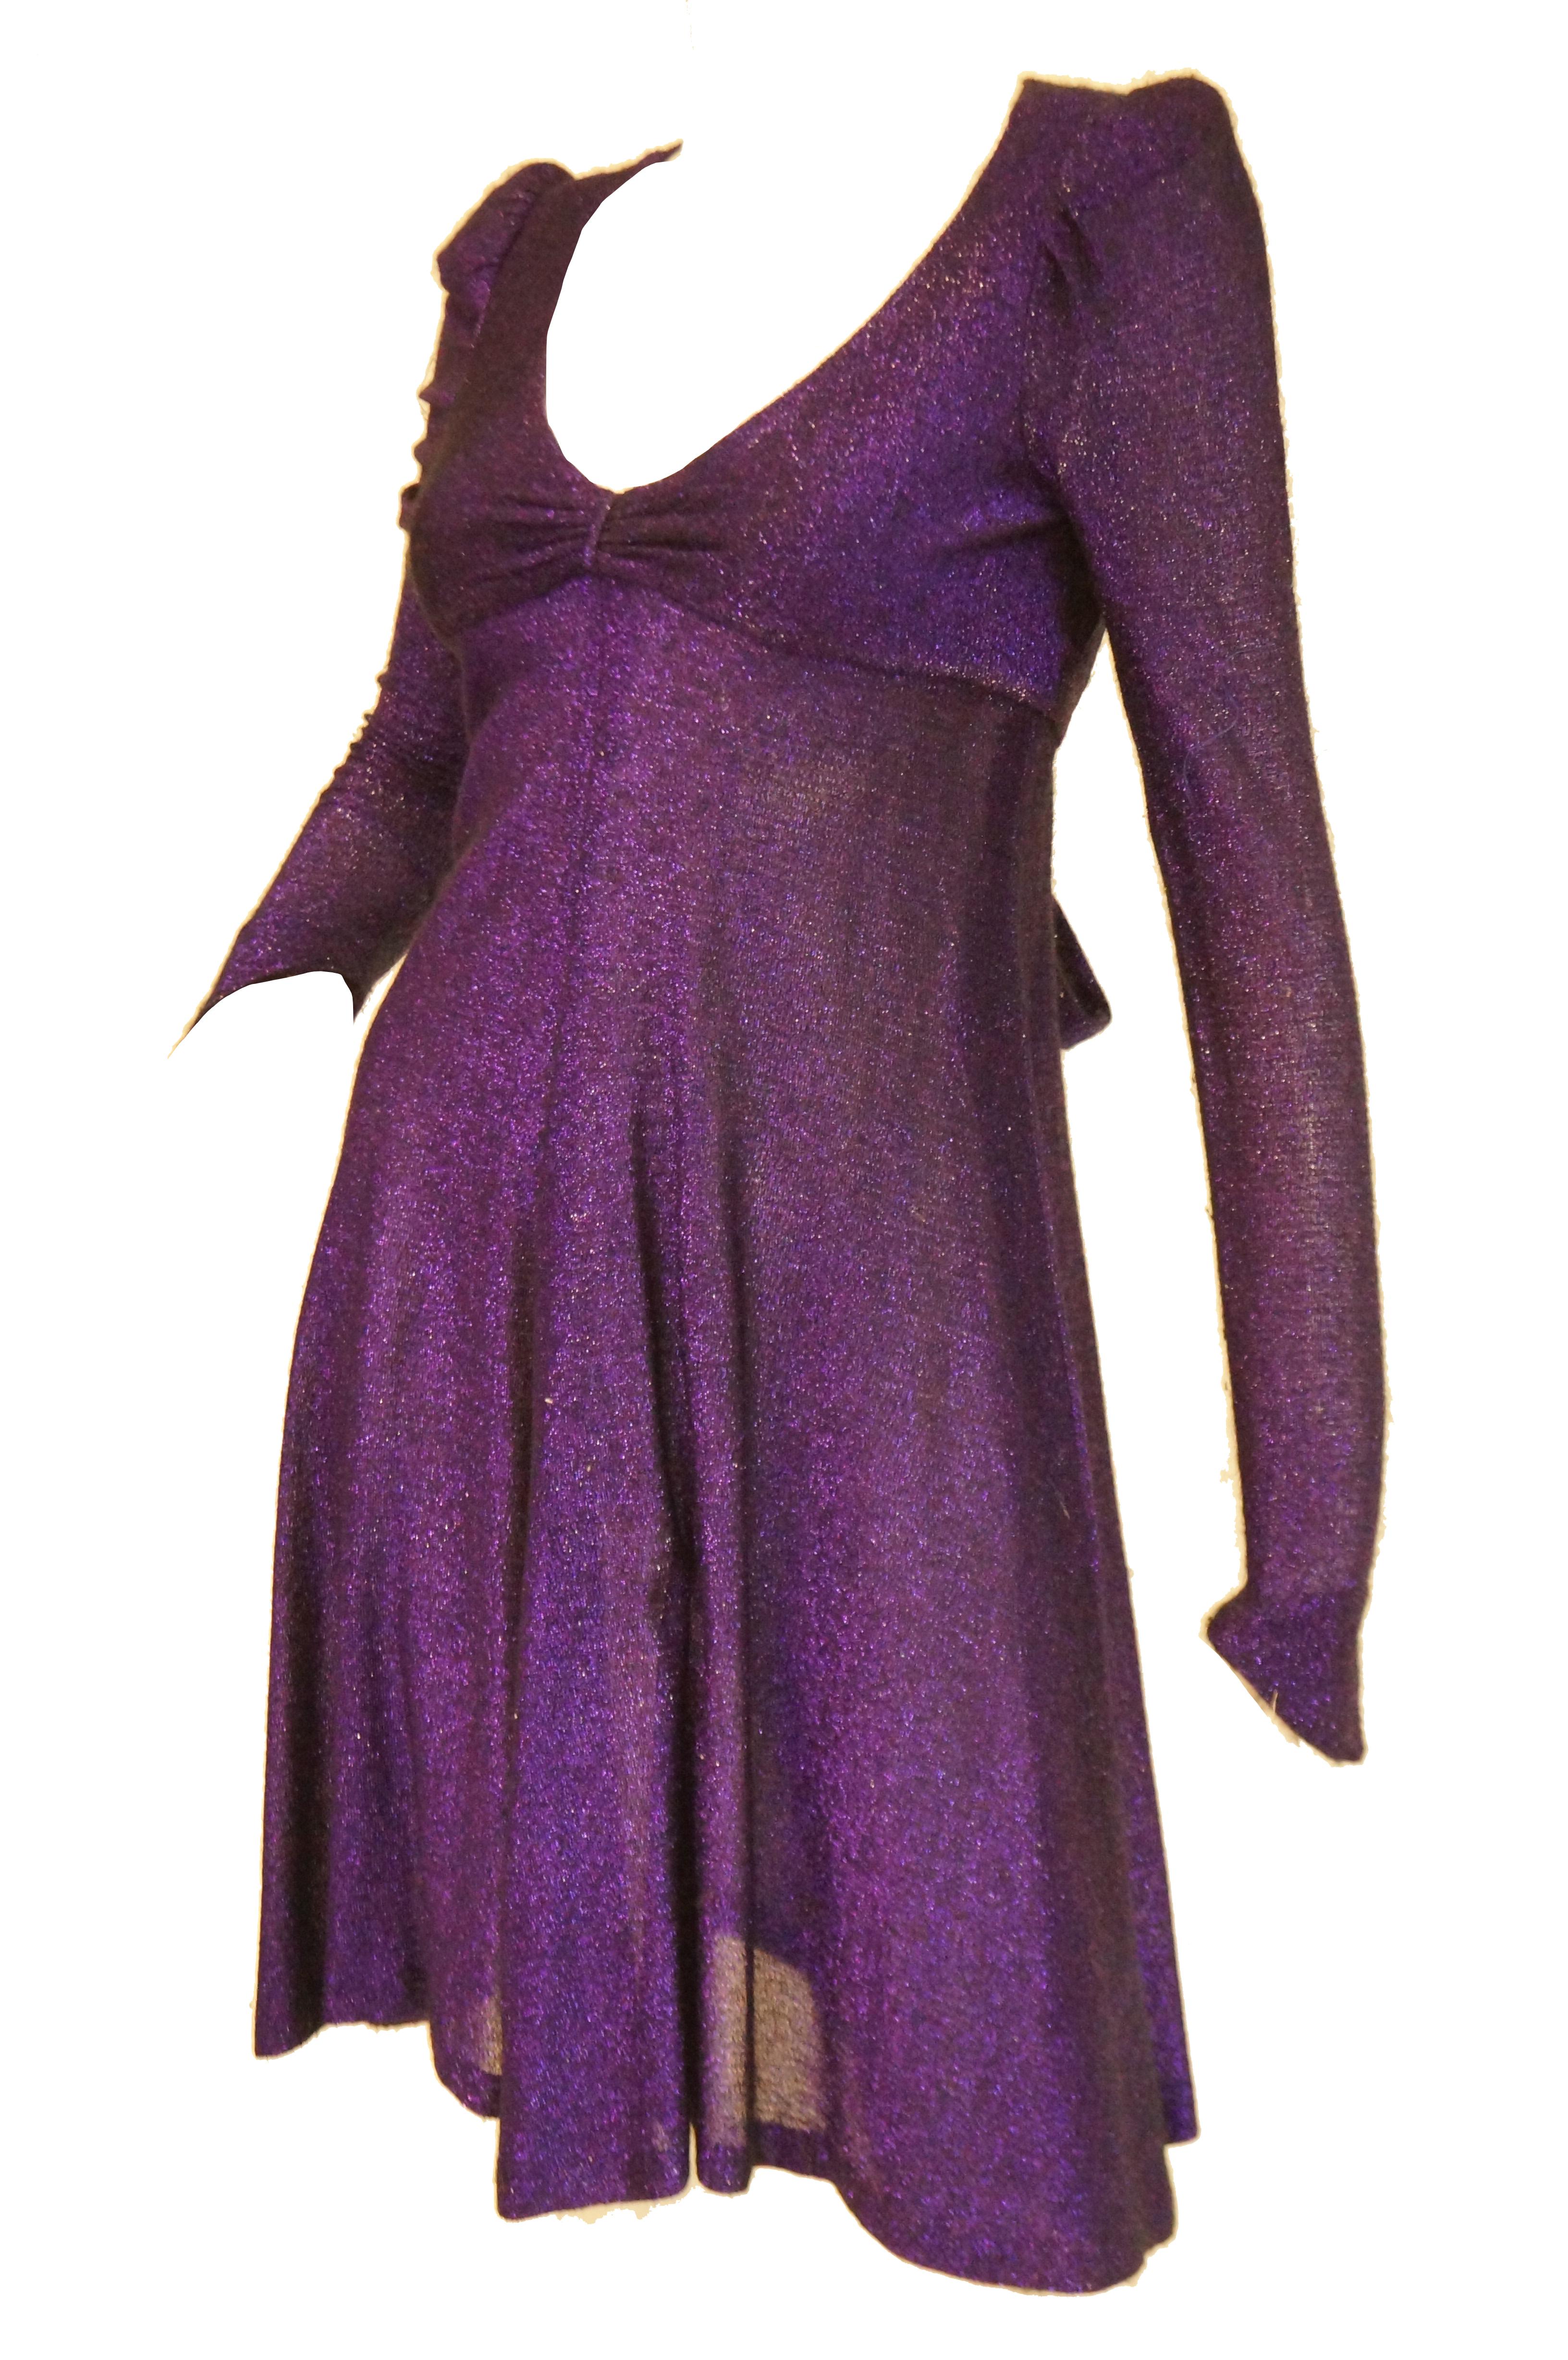 biba purple dress